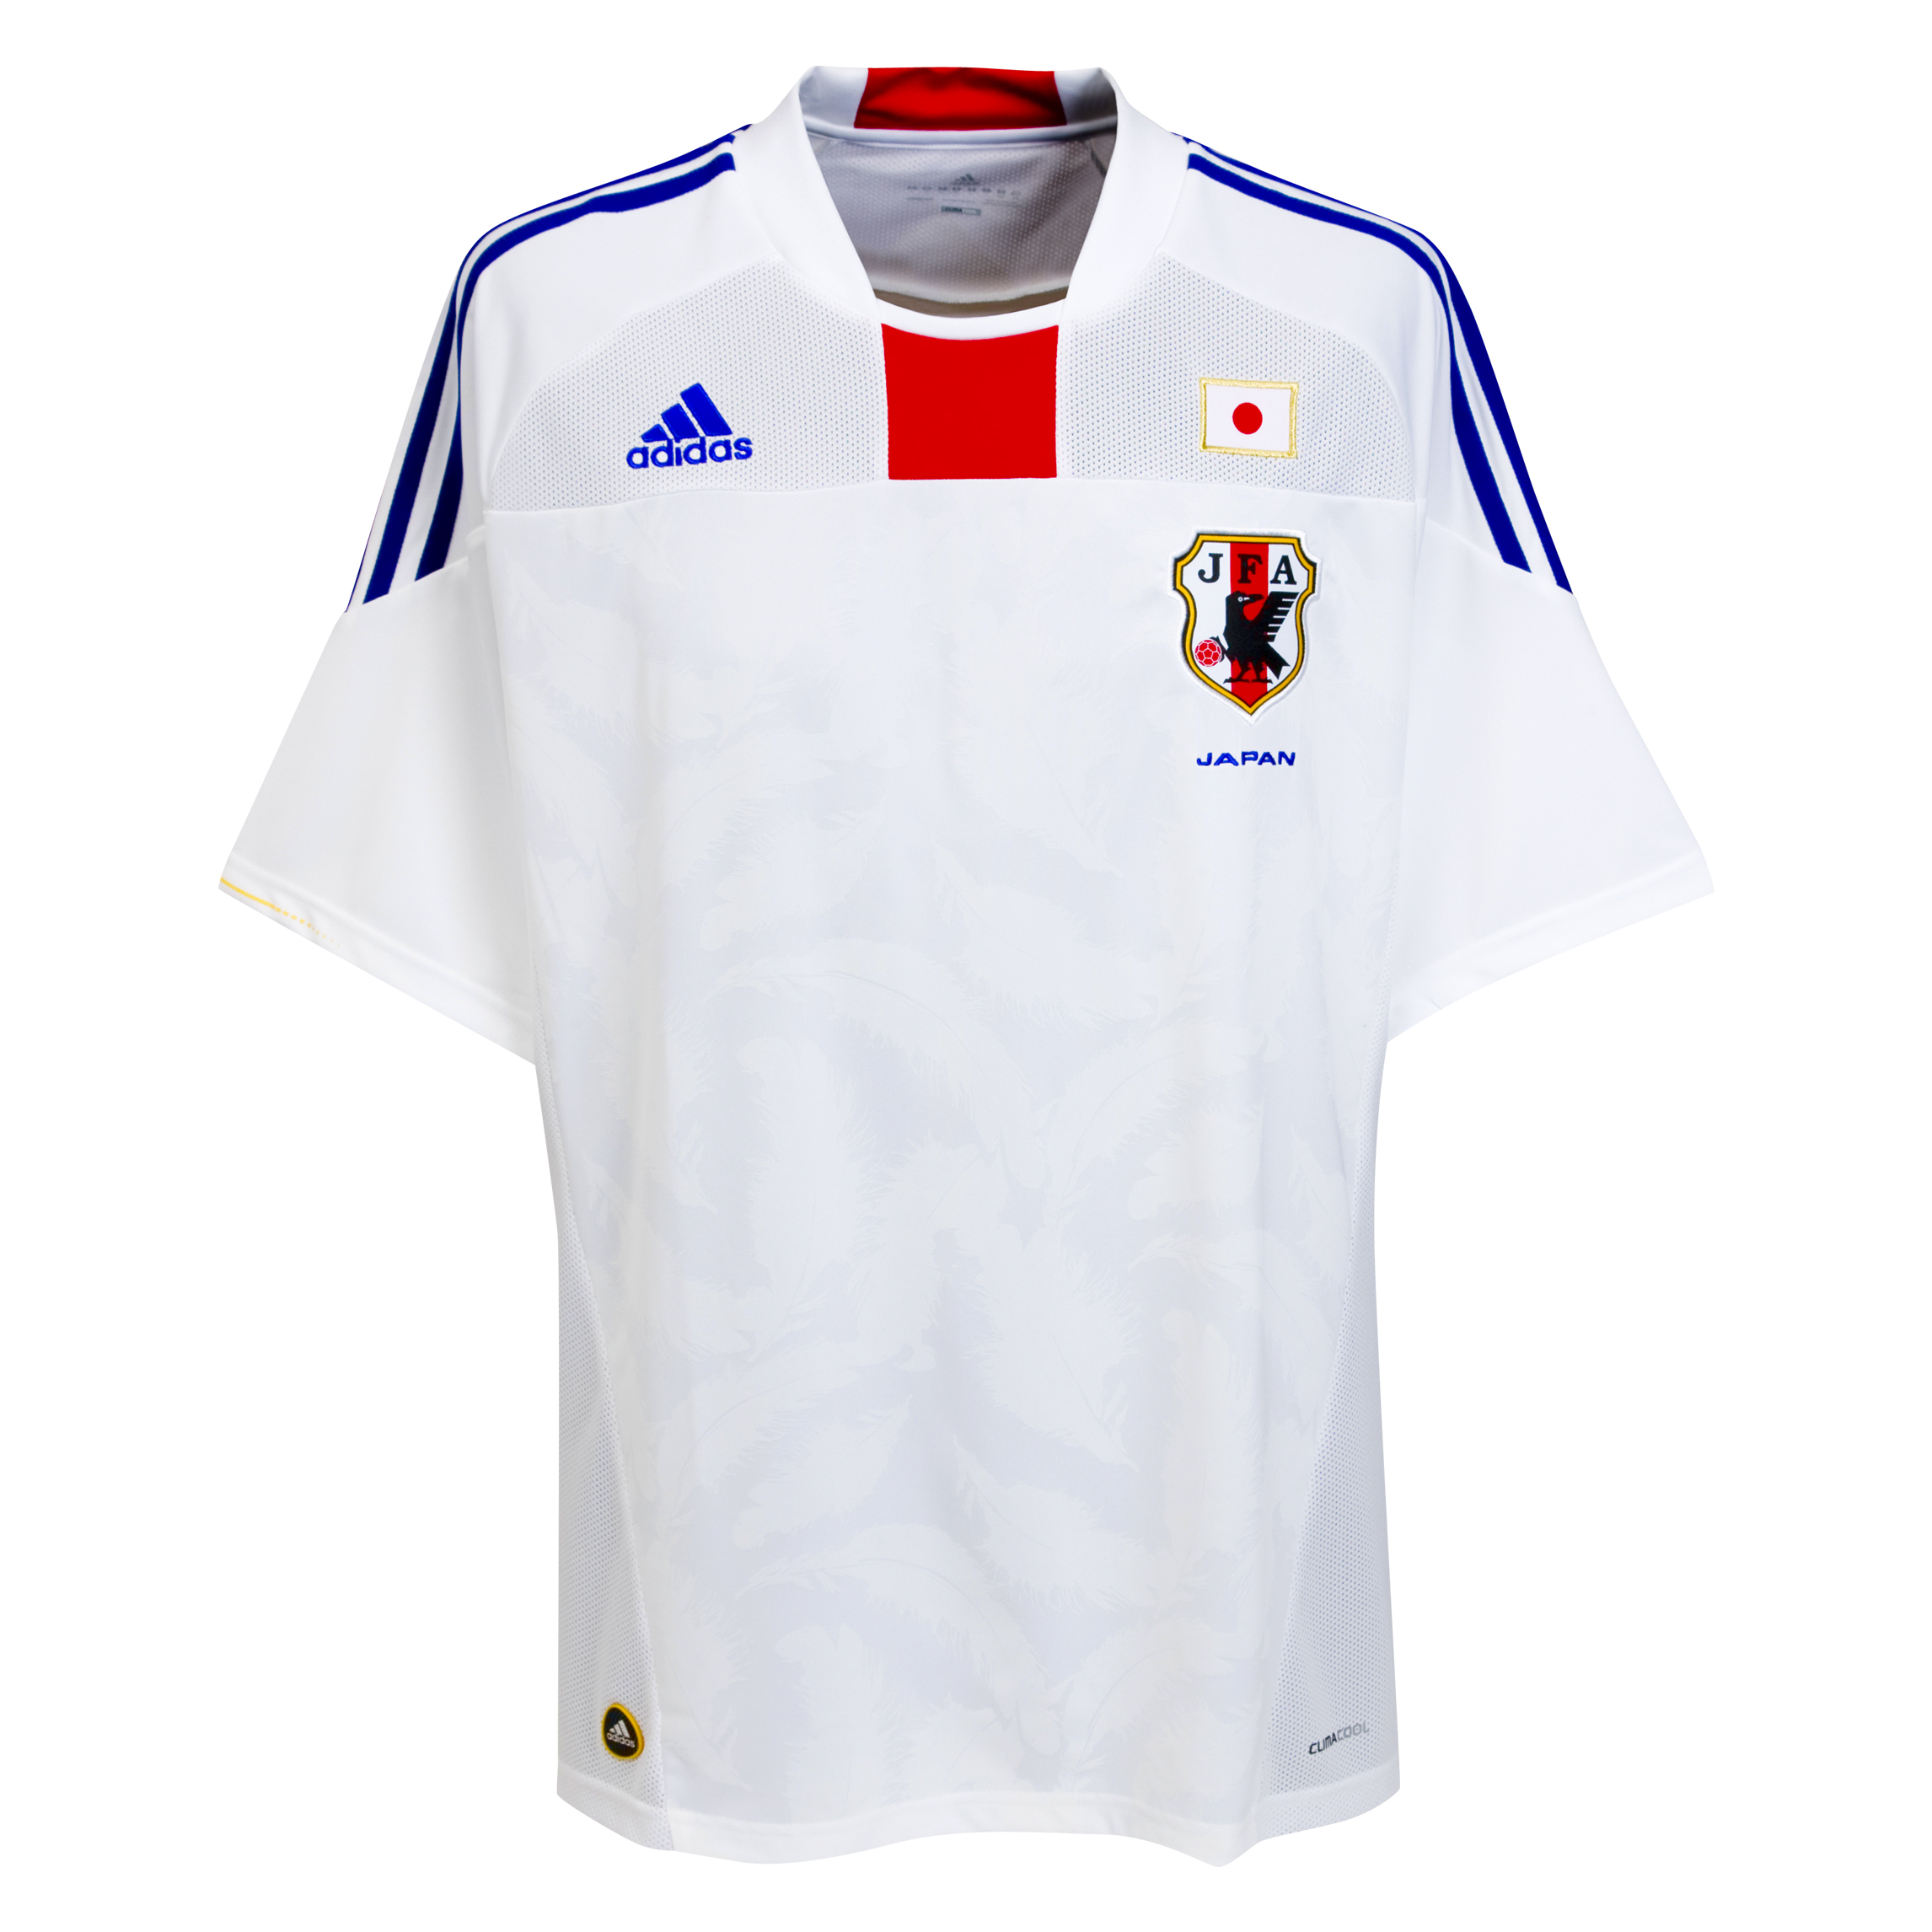 ملابس المنتخبات لكأس العالم Kb-66941